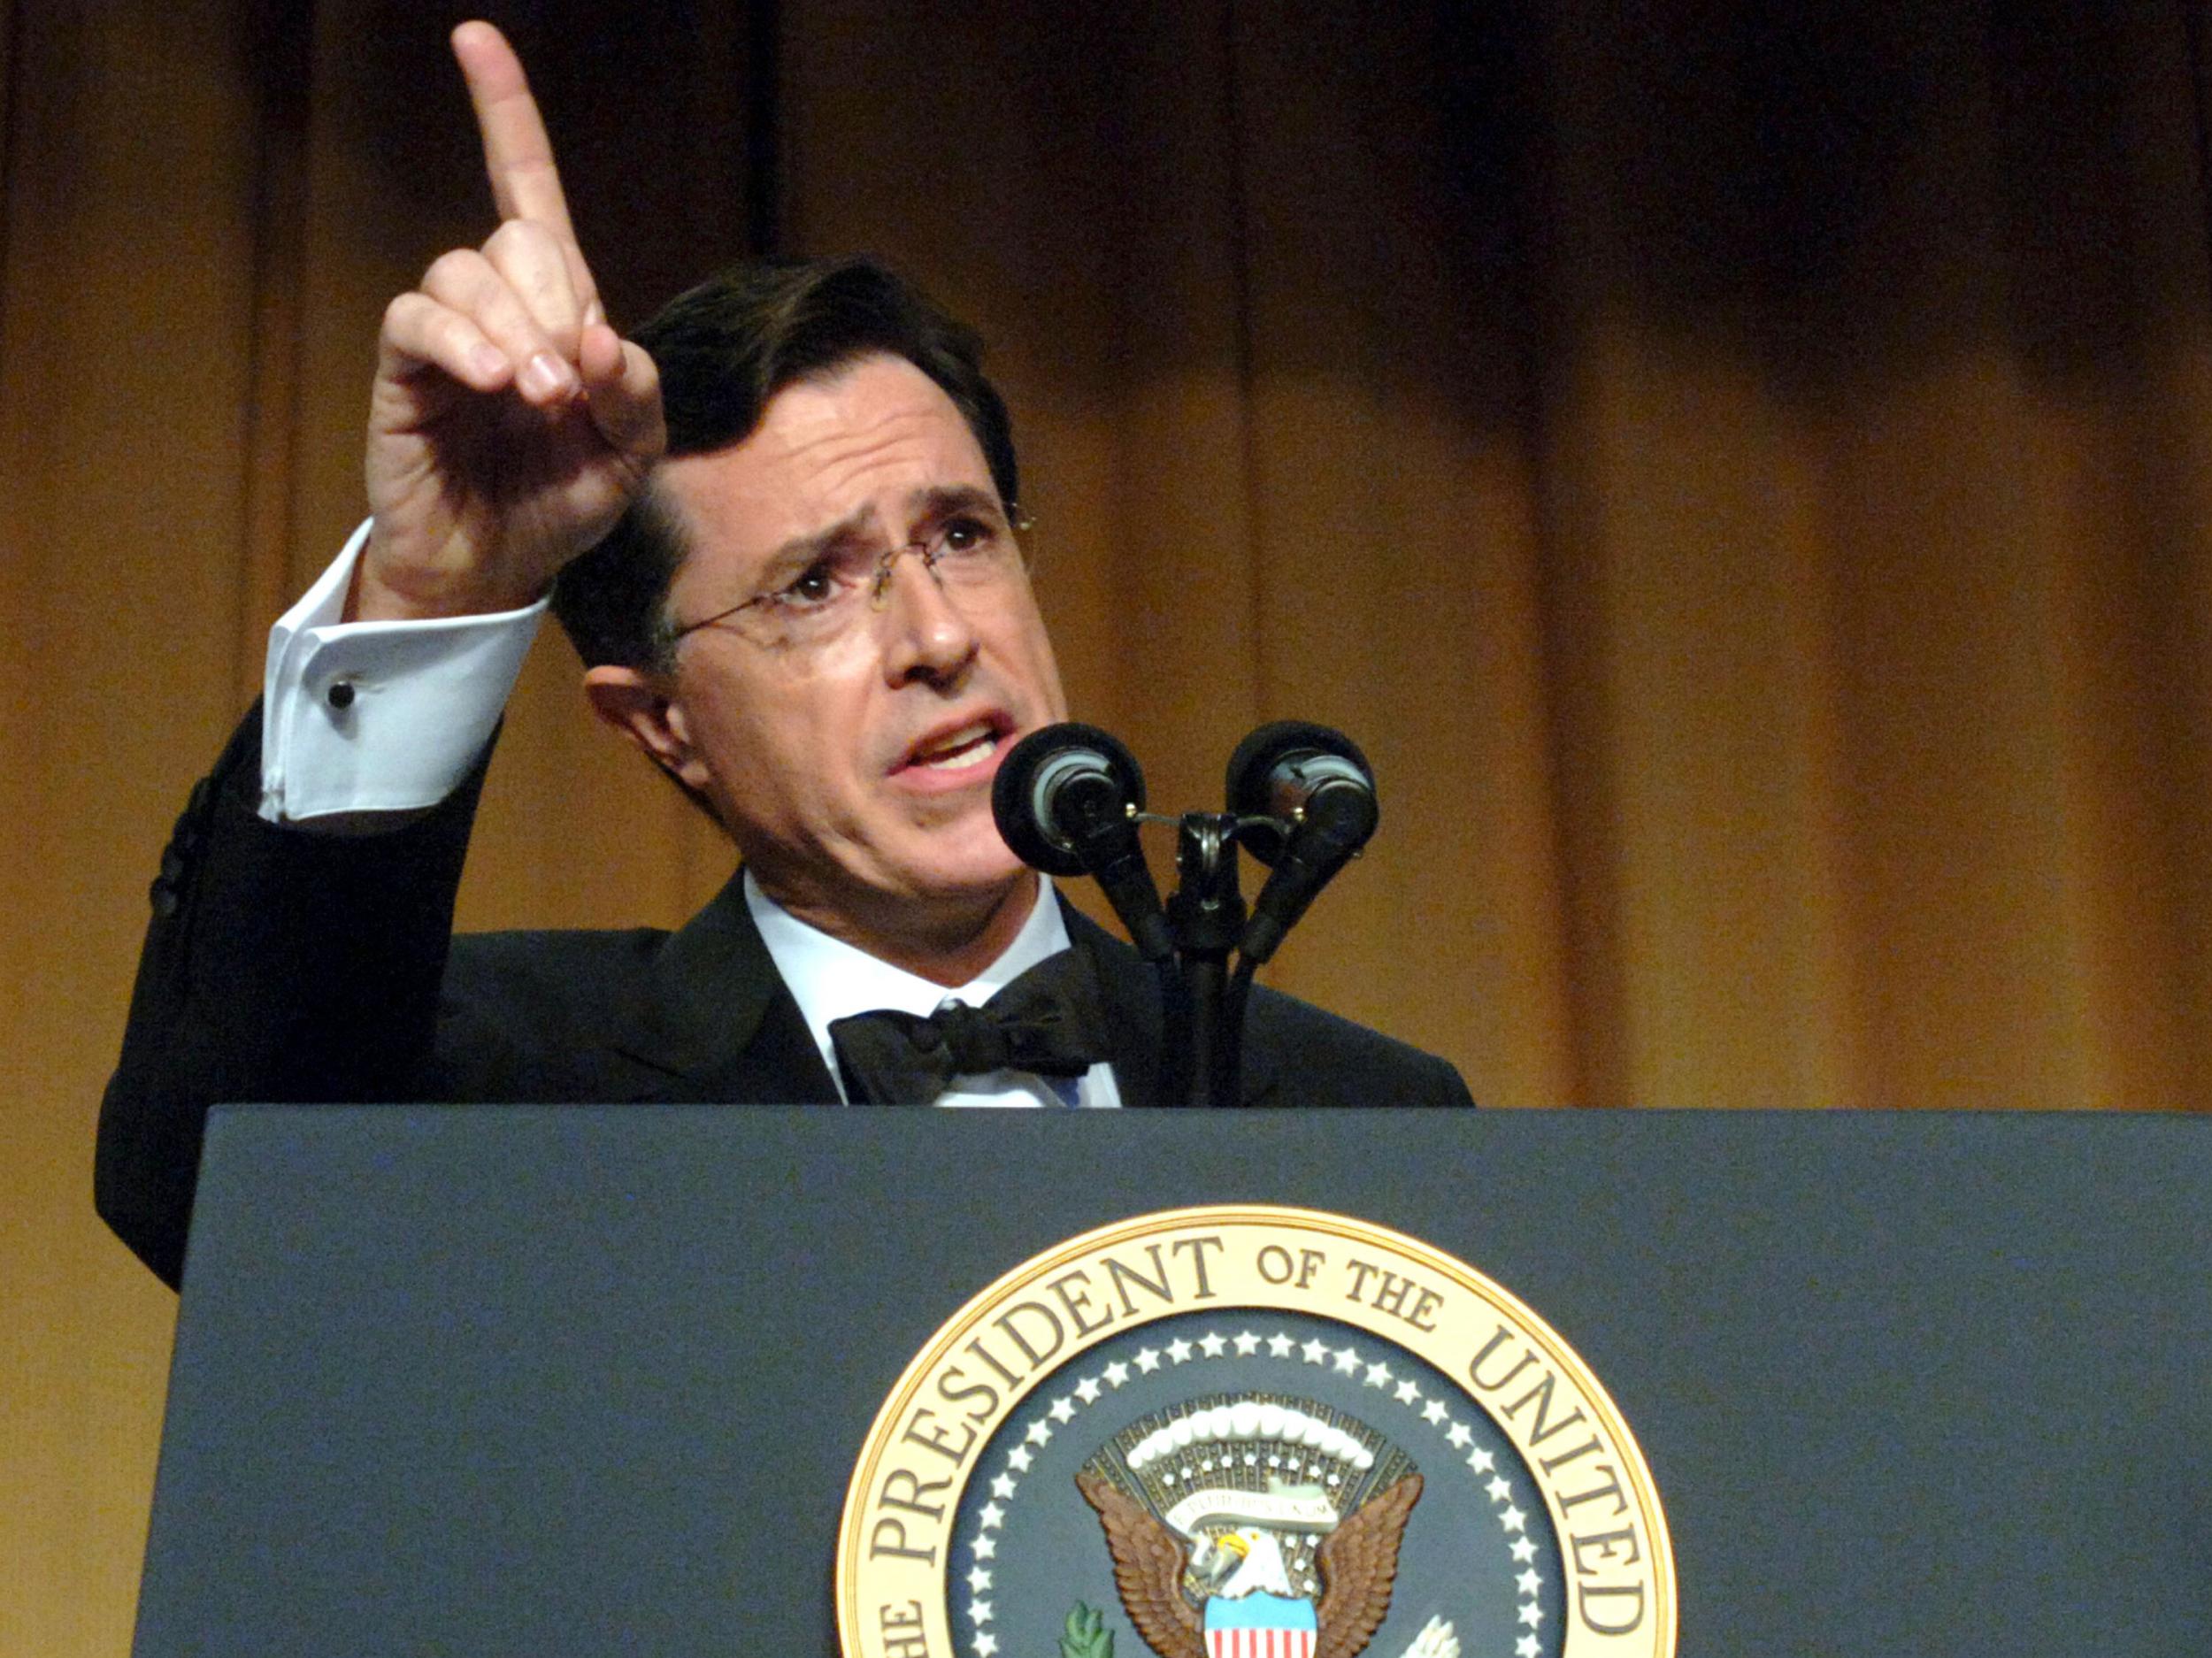 Stephen Colbert skewering George W Bush in 2006